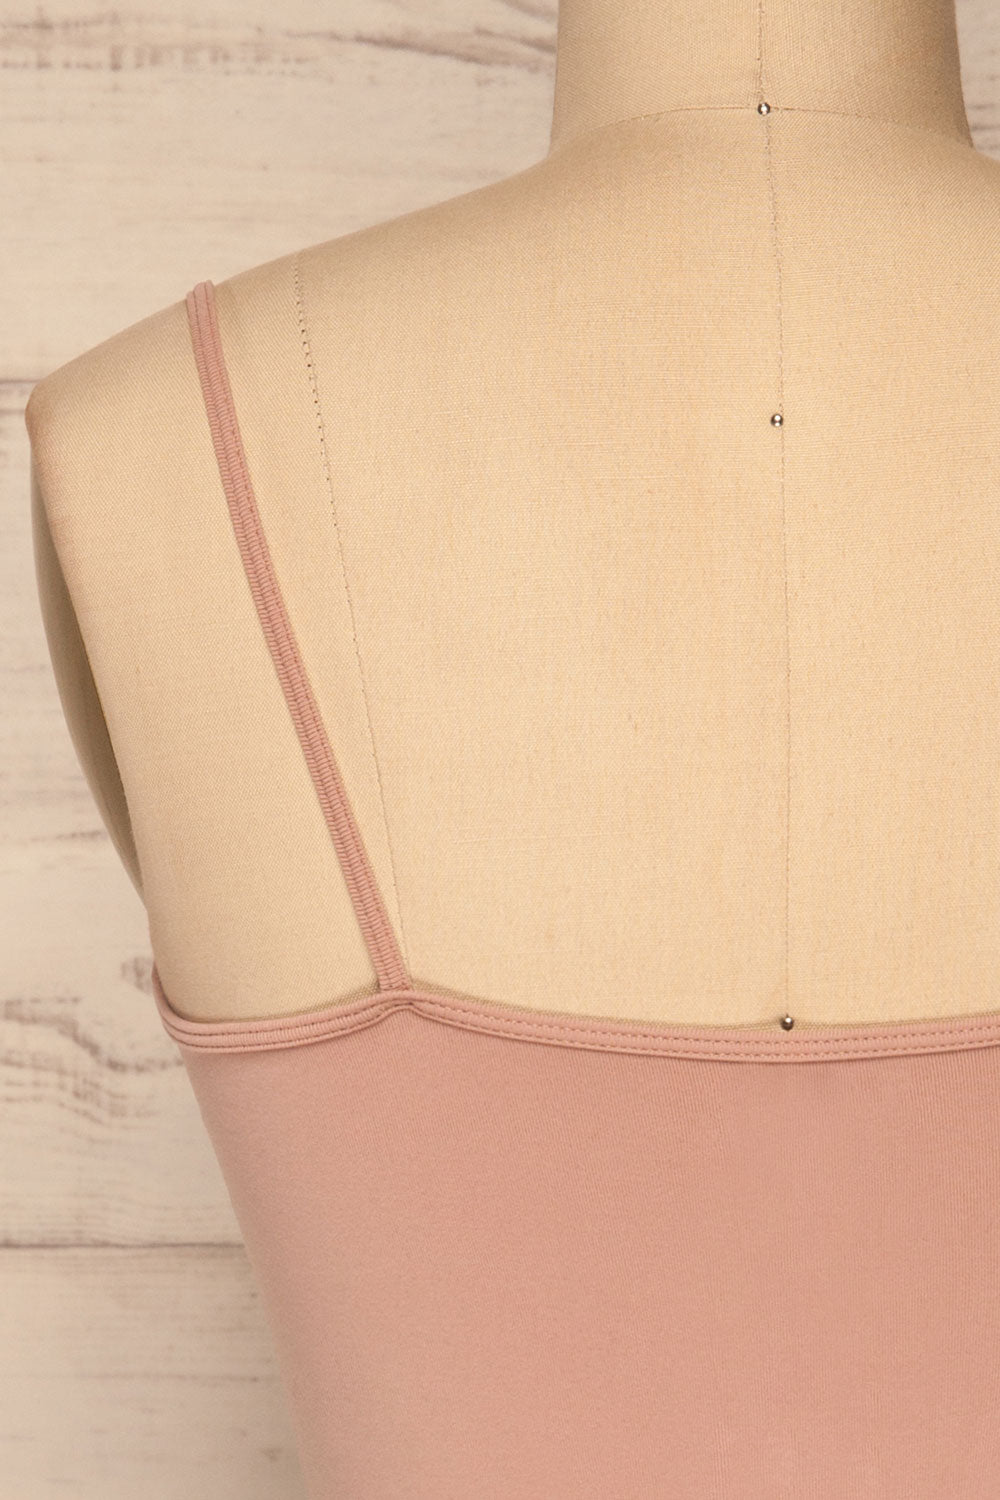 Cento Pink Bralette Crop Top | La petite garçonne back close-up